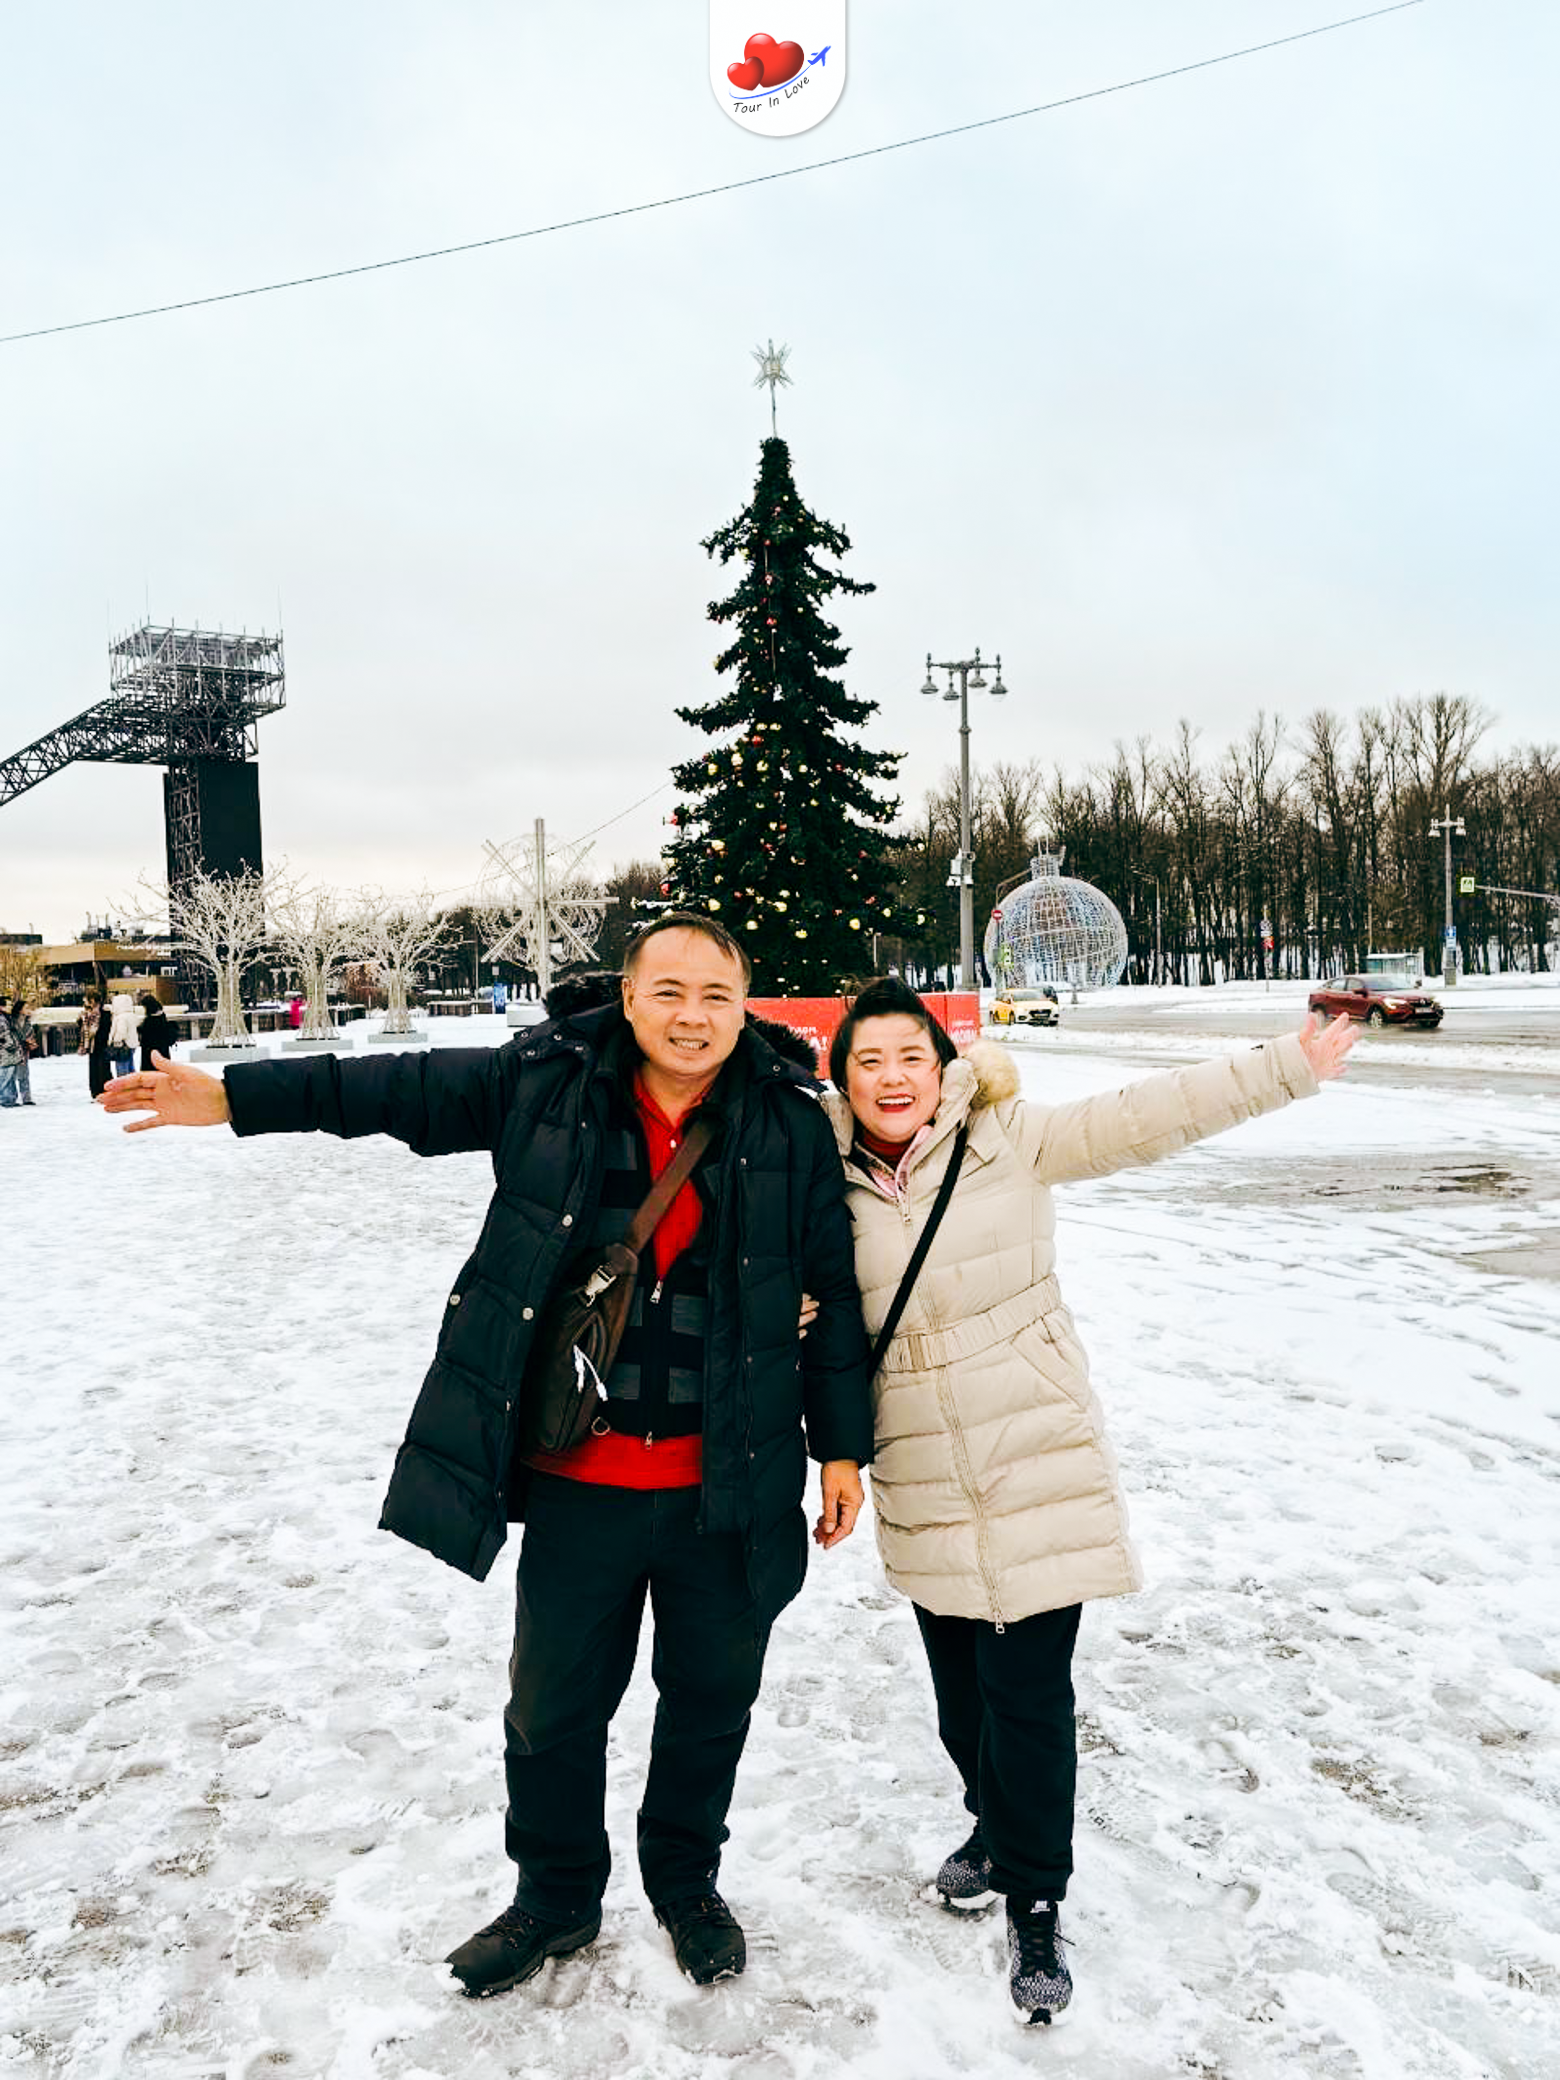 รีวิวทัวร์อินเลิฟ 📸 ลูกค้าเดินทางท่องเที่ยวฟินๆ หิมะหนานุ่ม ที่ประเทศรัสเซีย เที่ยวได้สบายๆ อากาศเย็นแน่นอน นั่งรถไฟความเร็วสู๊งงงงงง เก็บครบทุกไฮไลท์